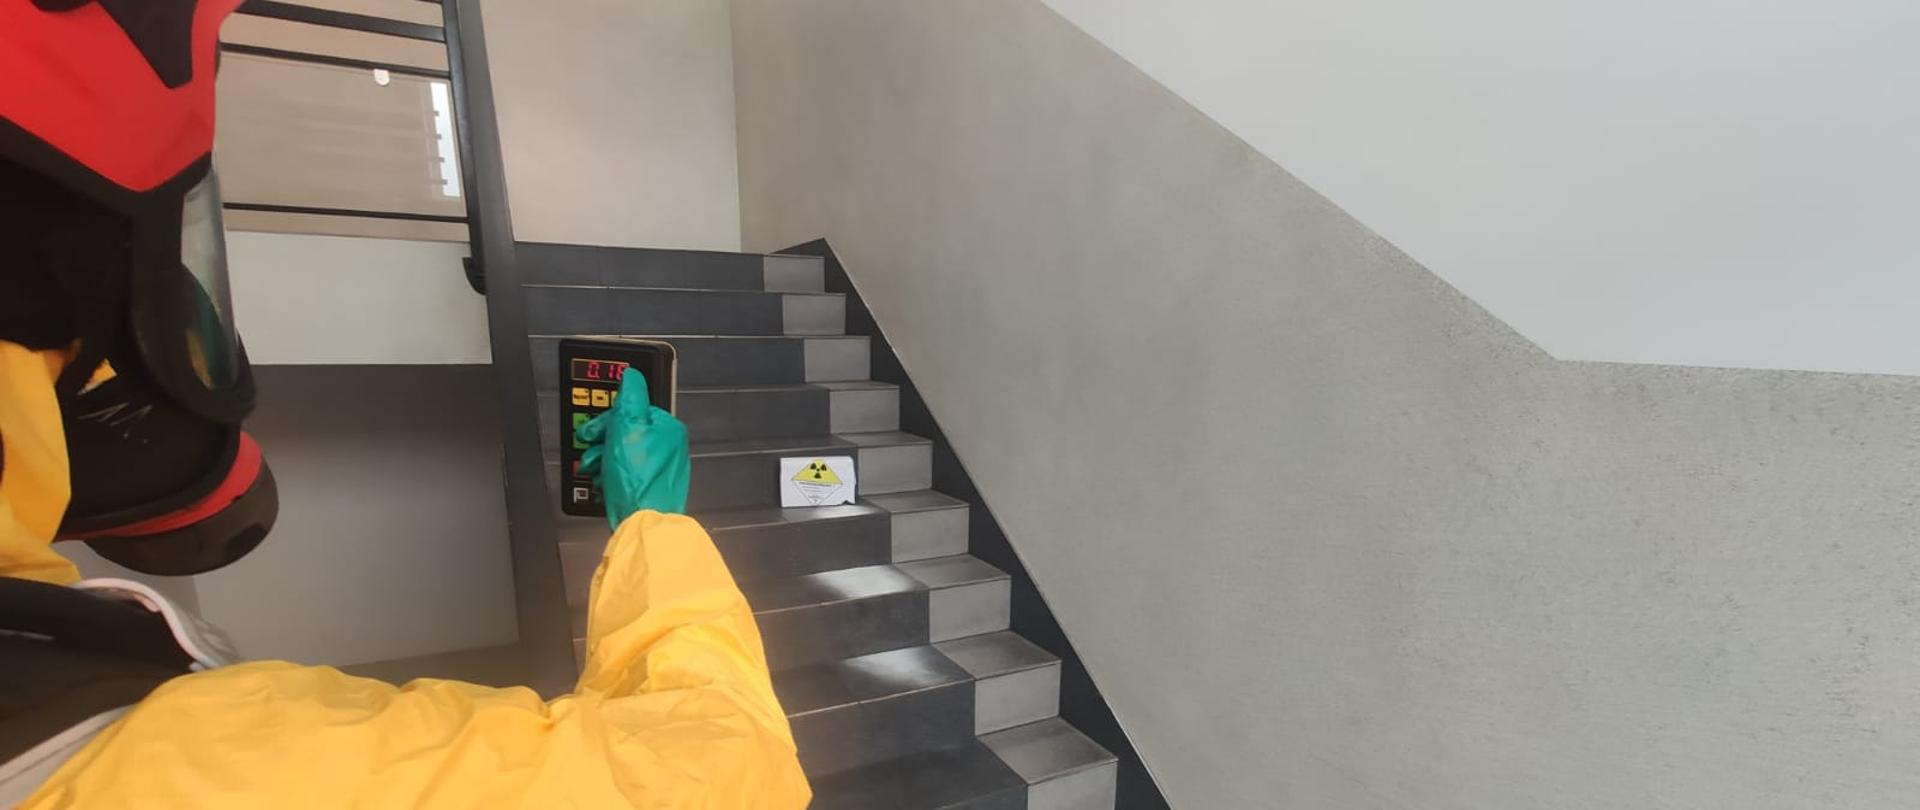 Strażak w ubraniu przeciwchemicznym dokonuje pomiaru promieniowania. Na schodach stoi uszkodzona paczka z czarną koniczyną na żółtym trójkącie. Poniżej rozsypany biały praoszek.